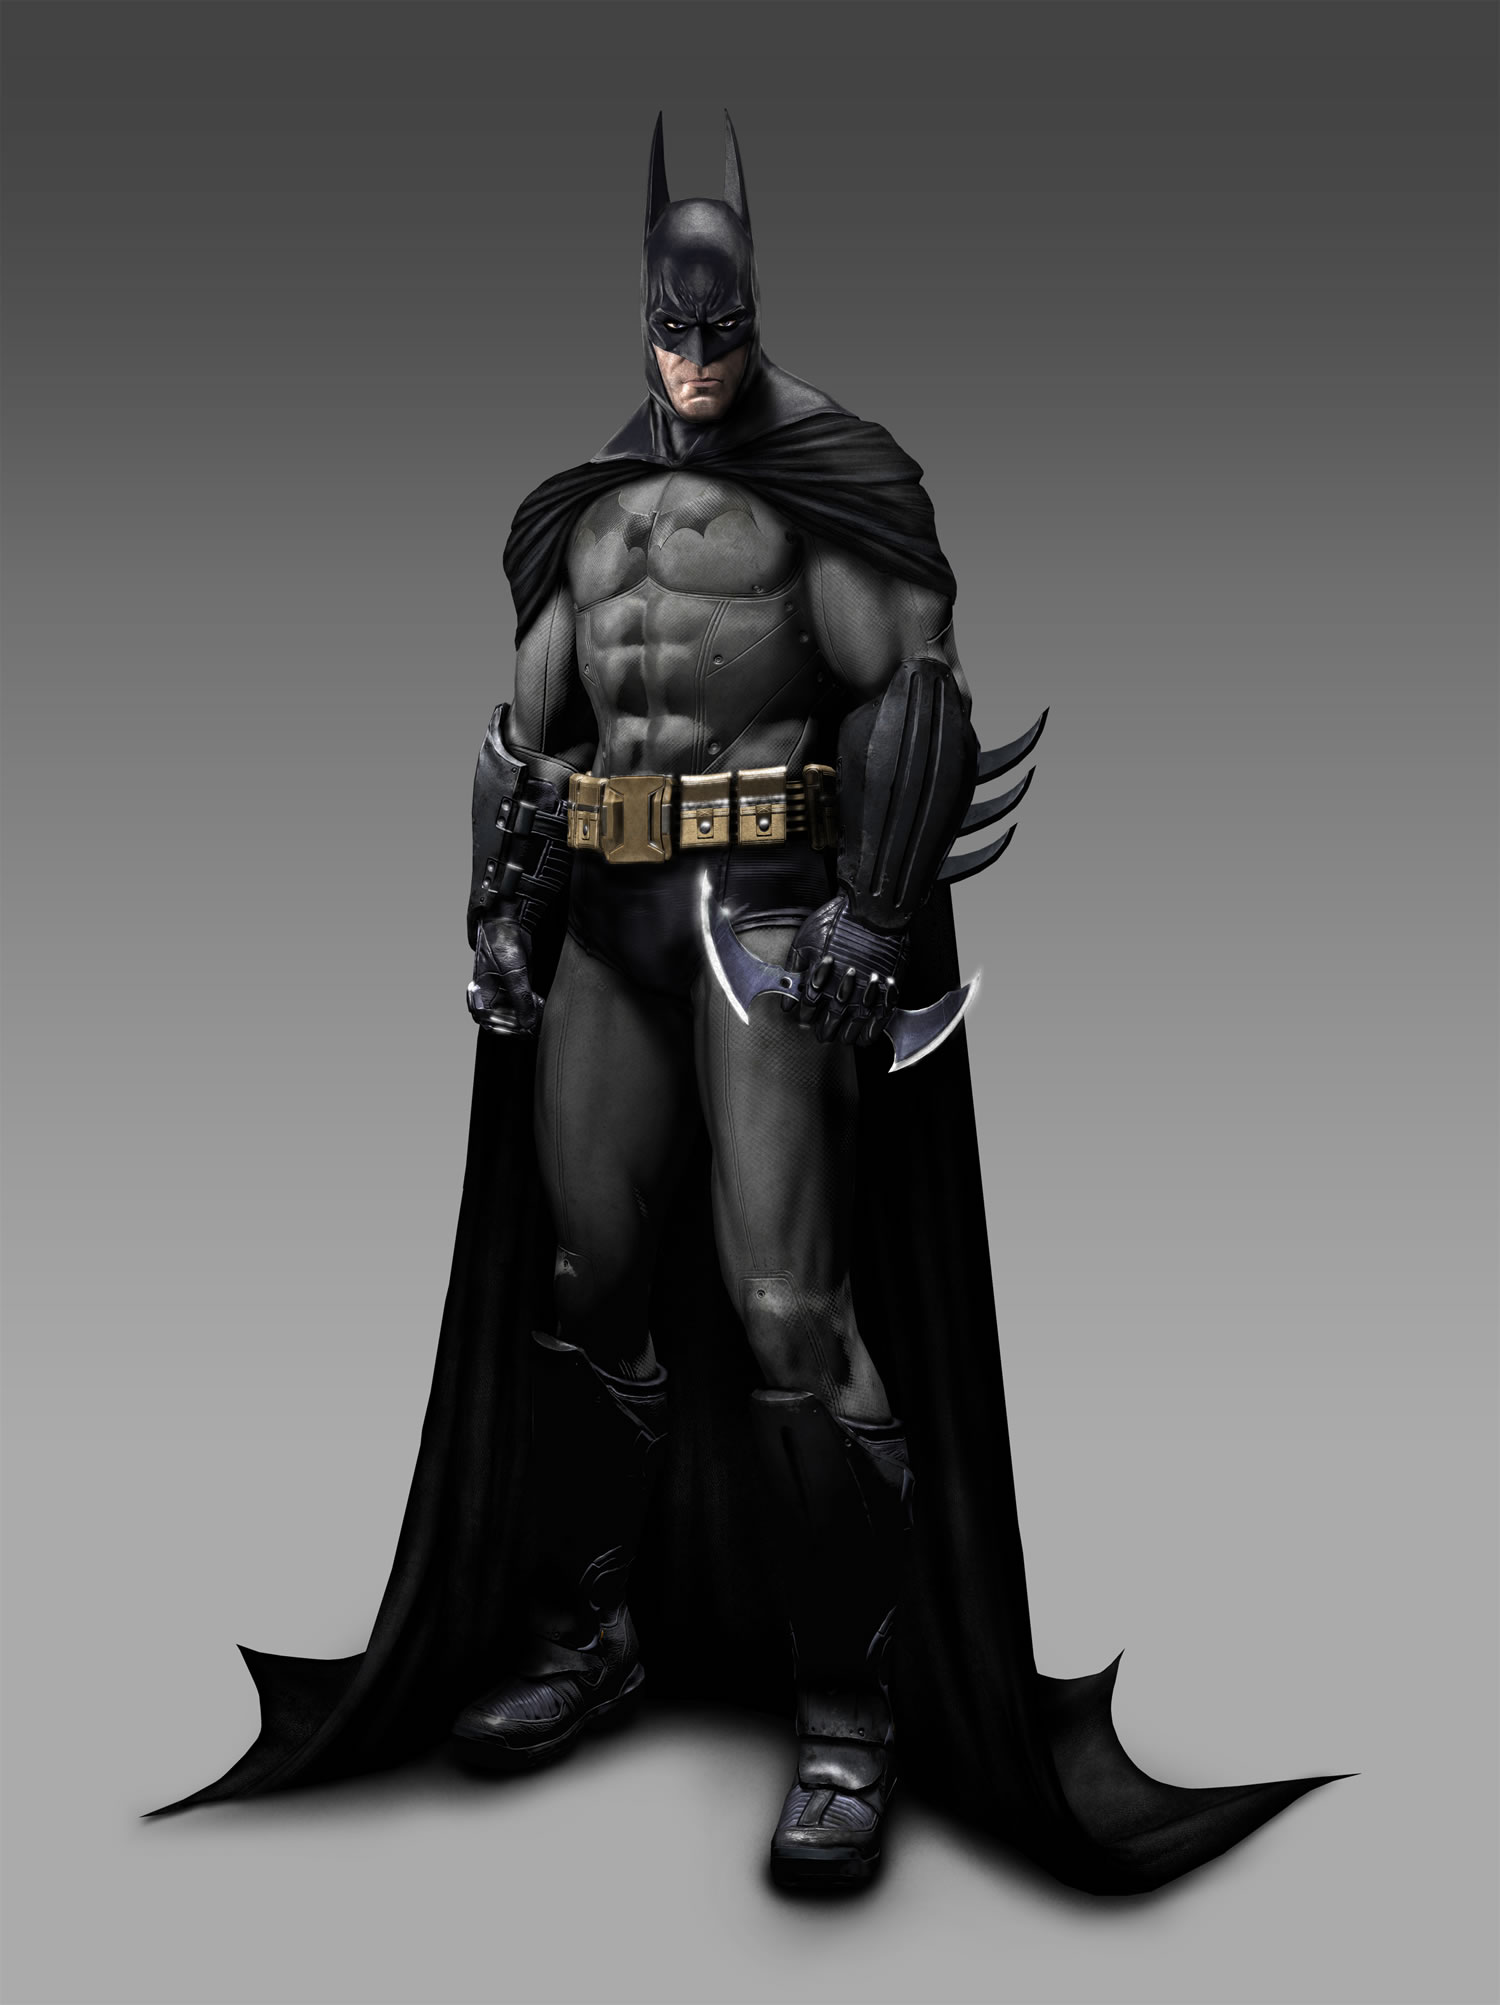 Batman: Arkham Asylum Backgrounds, Compatible - PC, Mobile, Gadgets| 1500x2005 px